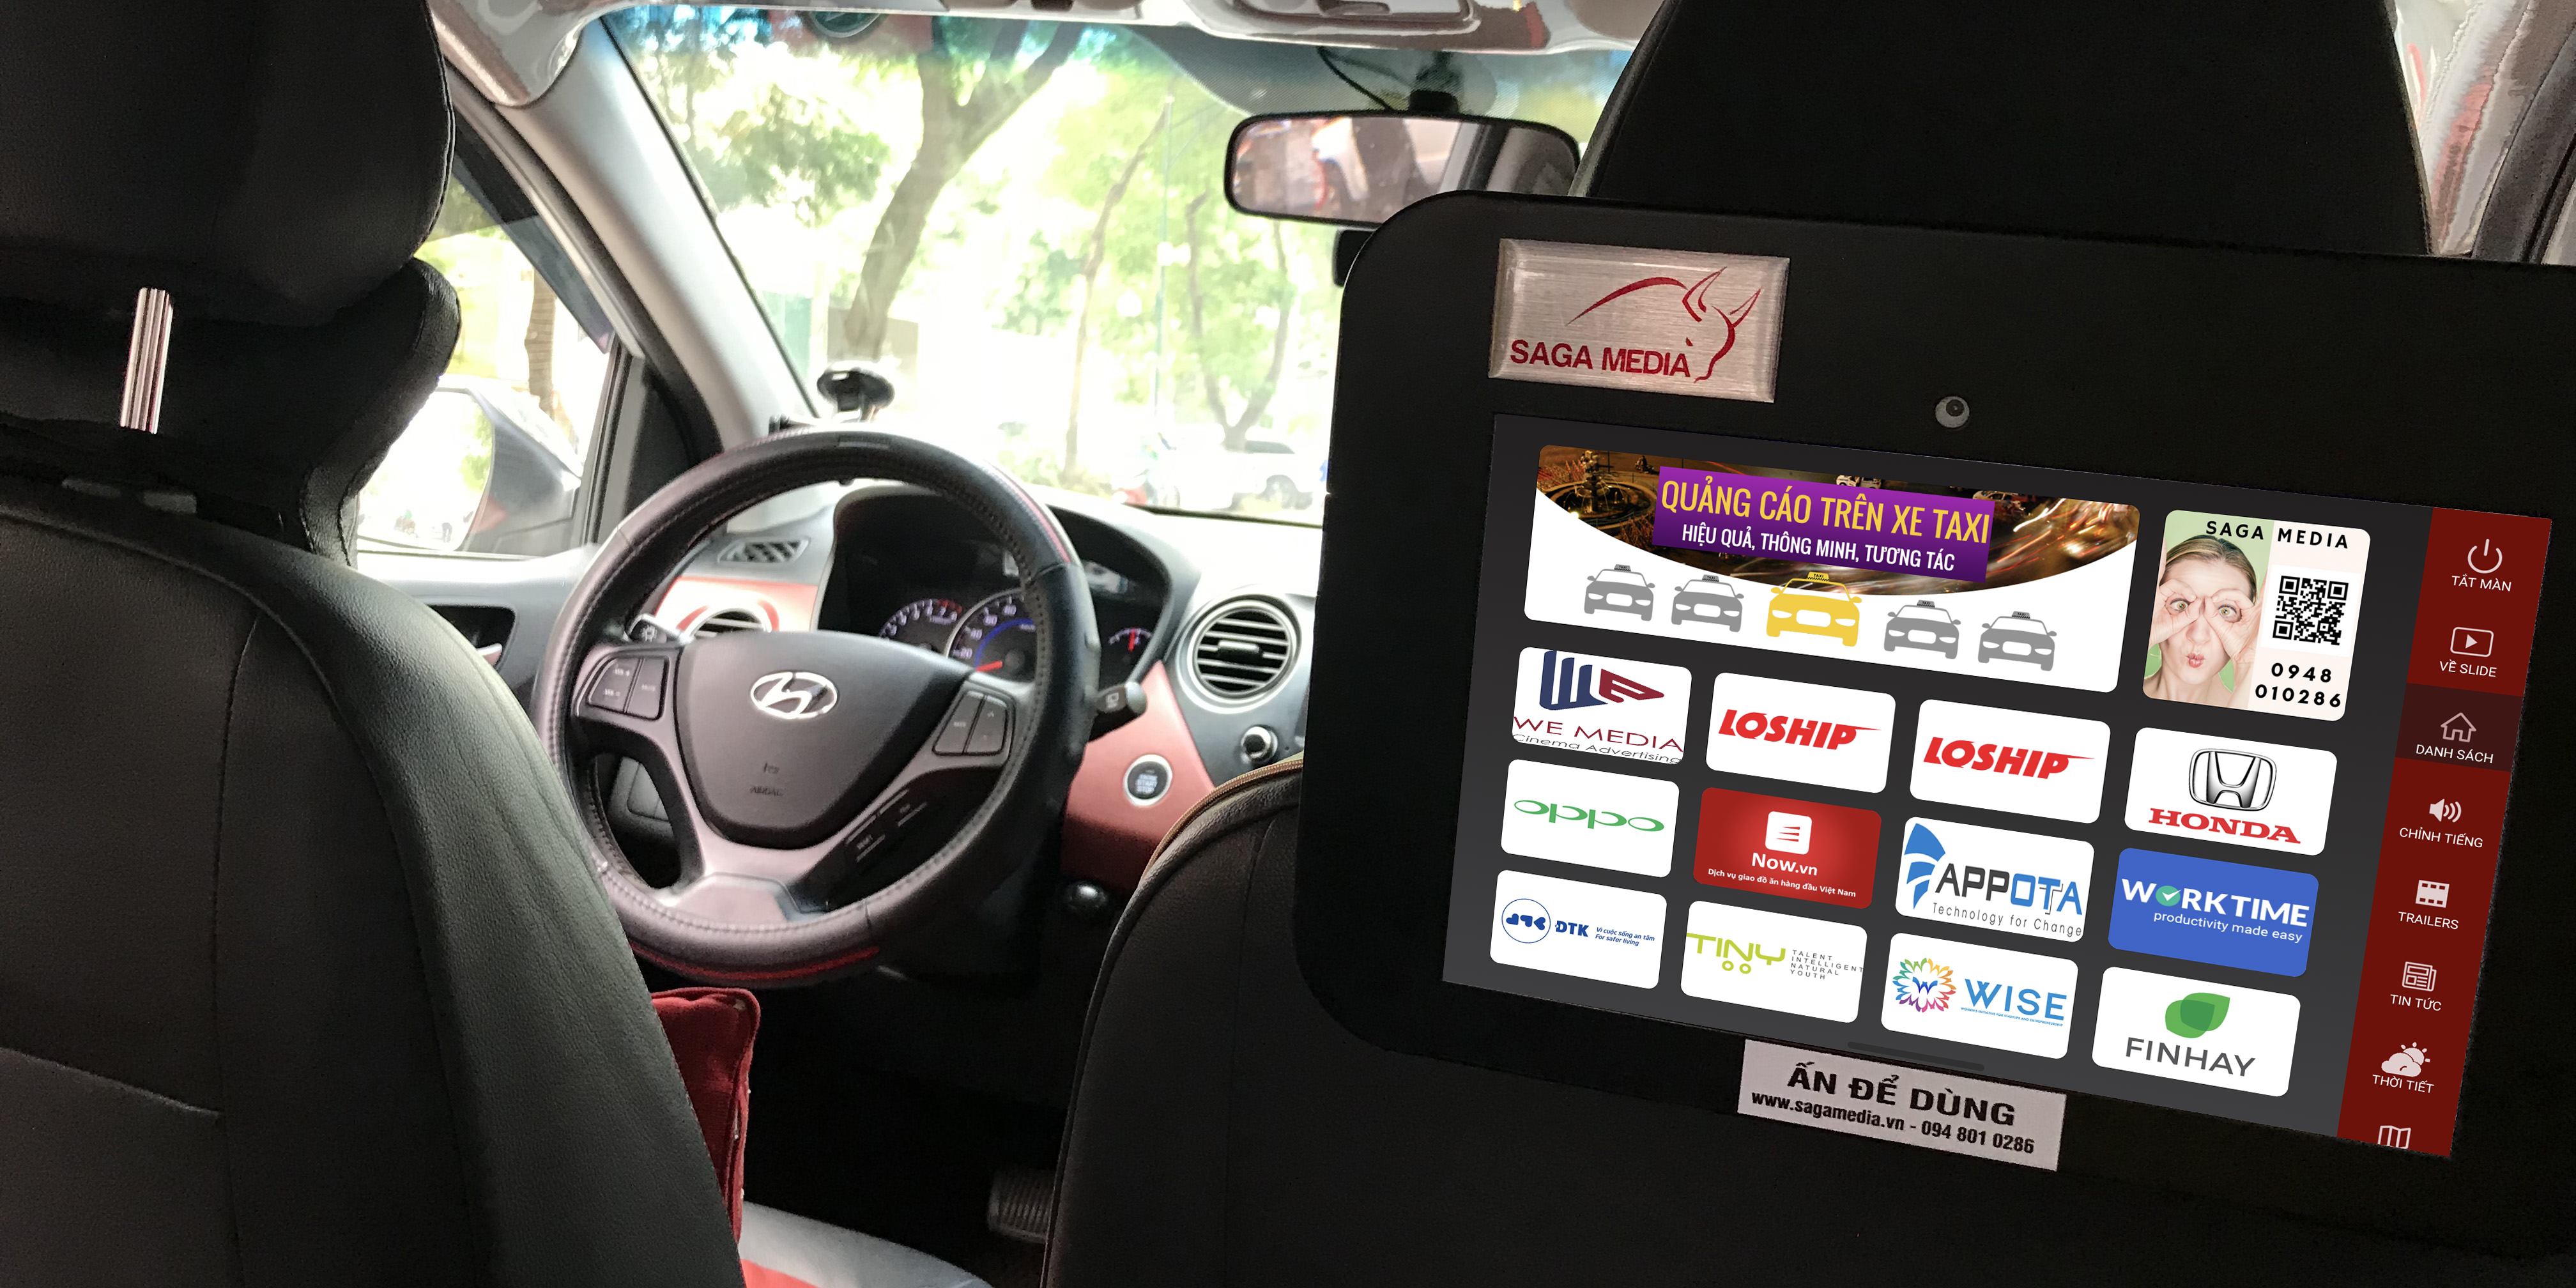 saga media quảng cáo thông minh tương tác qua màn hình máy tính bảng trên xe taxi